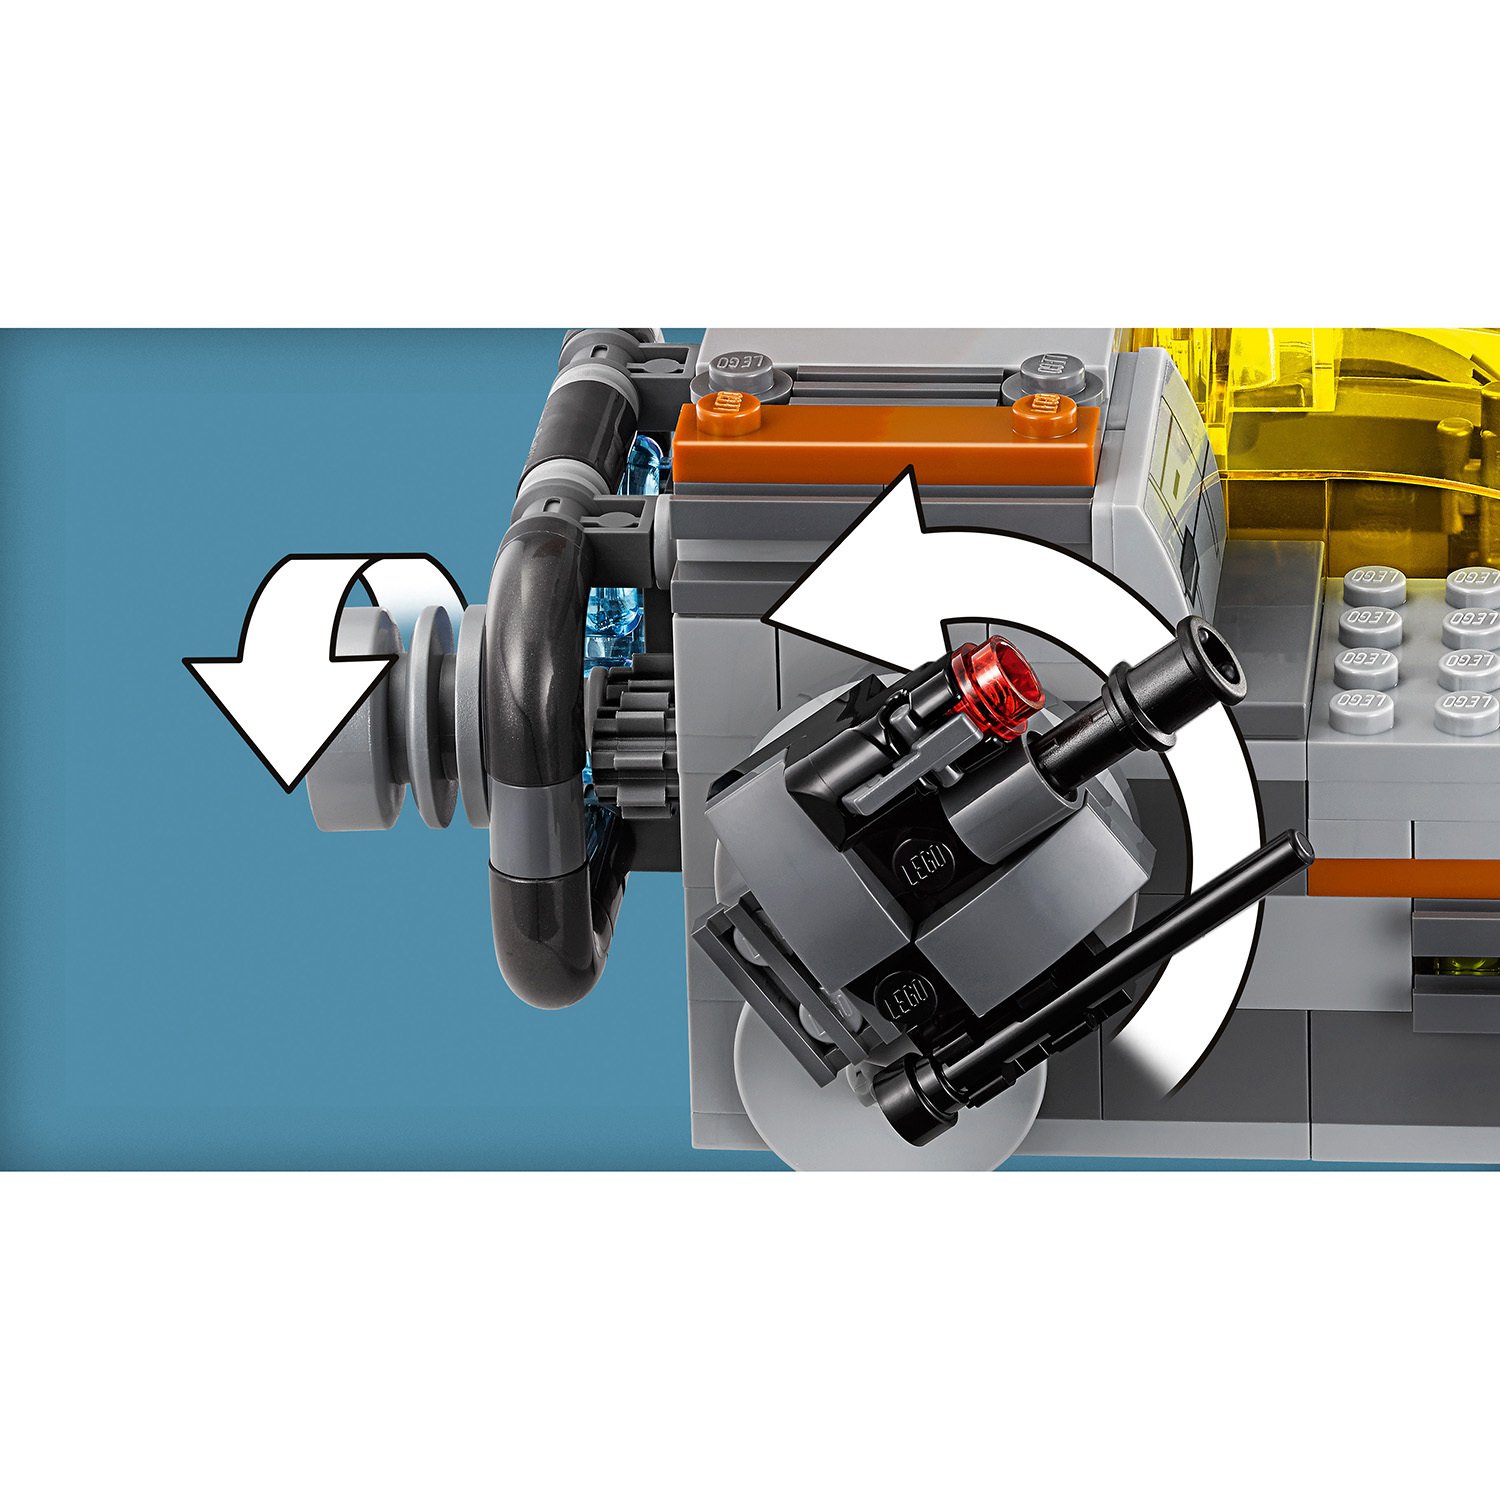 Конструктор Lego®  Star Wars - Транспортный корабль Сопротивления  